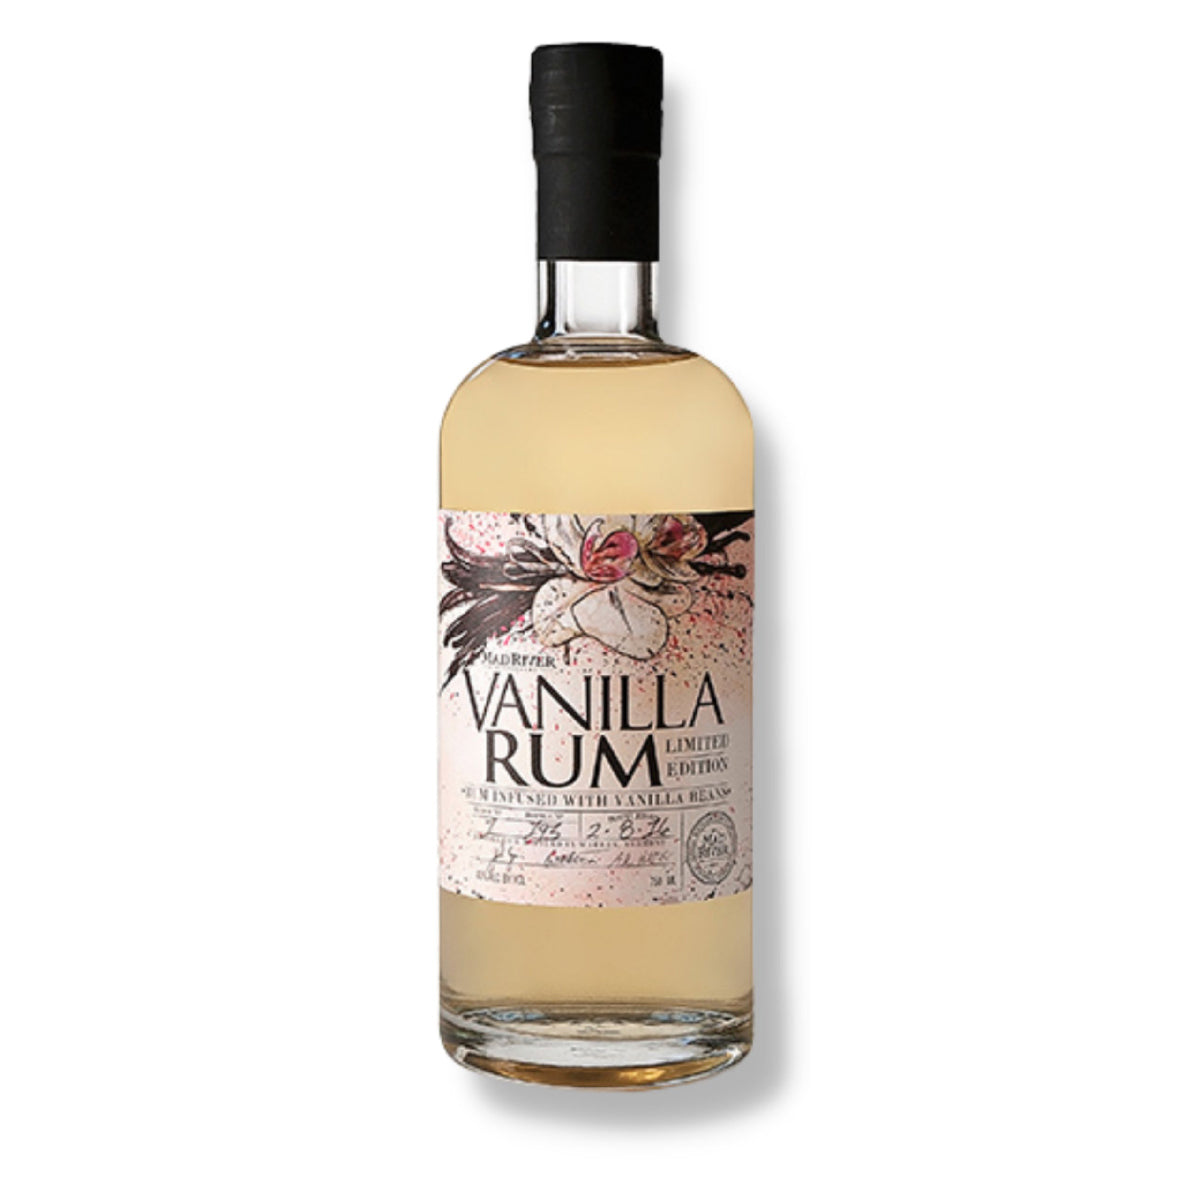 Mad River Vanilla Rum